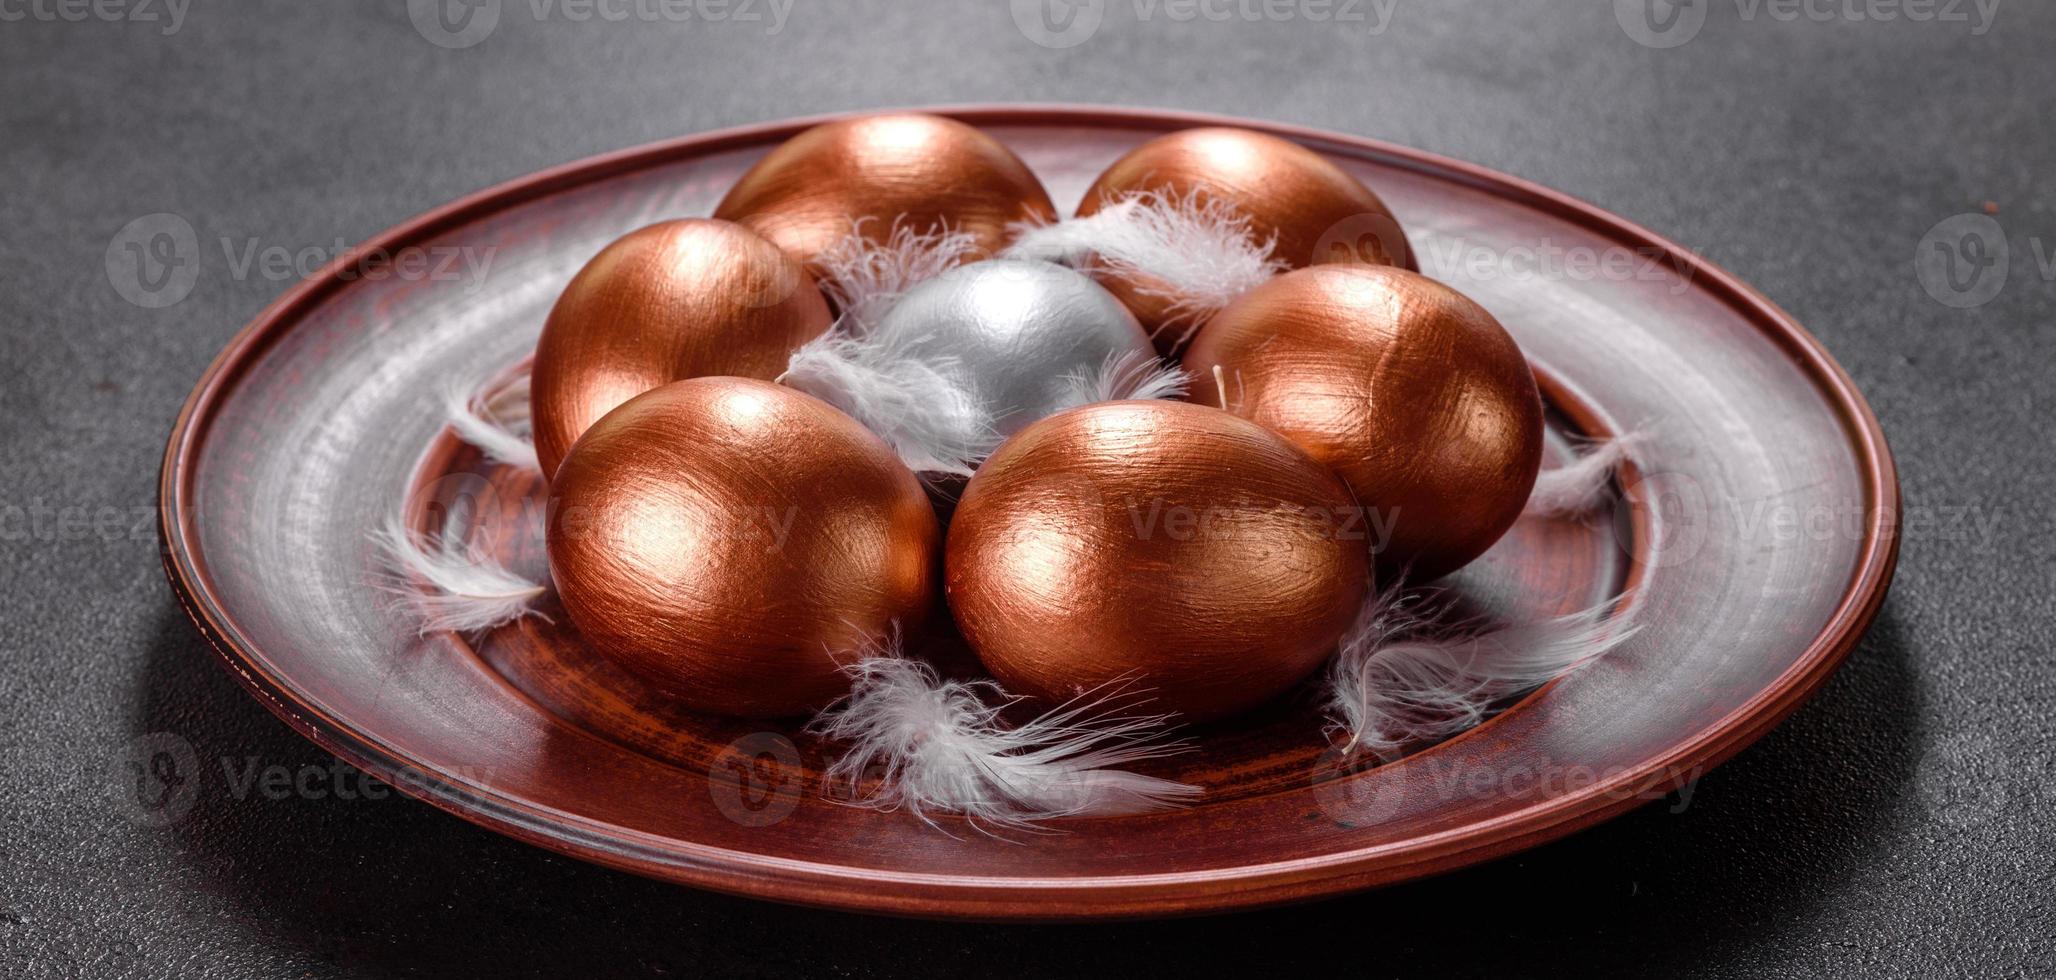 Huevos de pascua de oro y bronce y pastel de pascua sobre un fondo oscuro foto